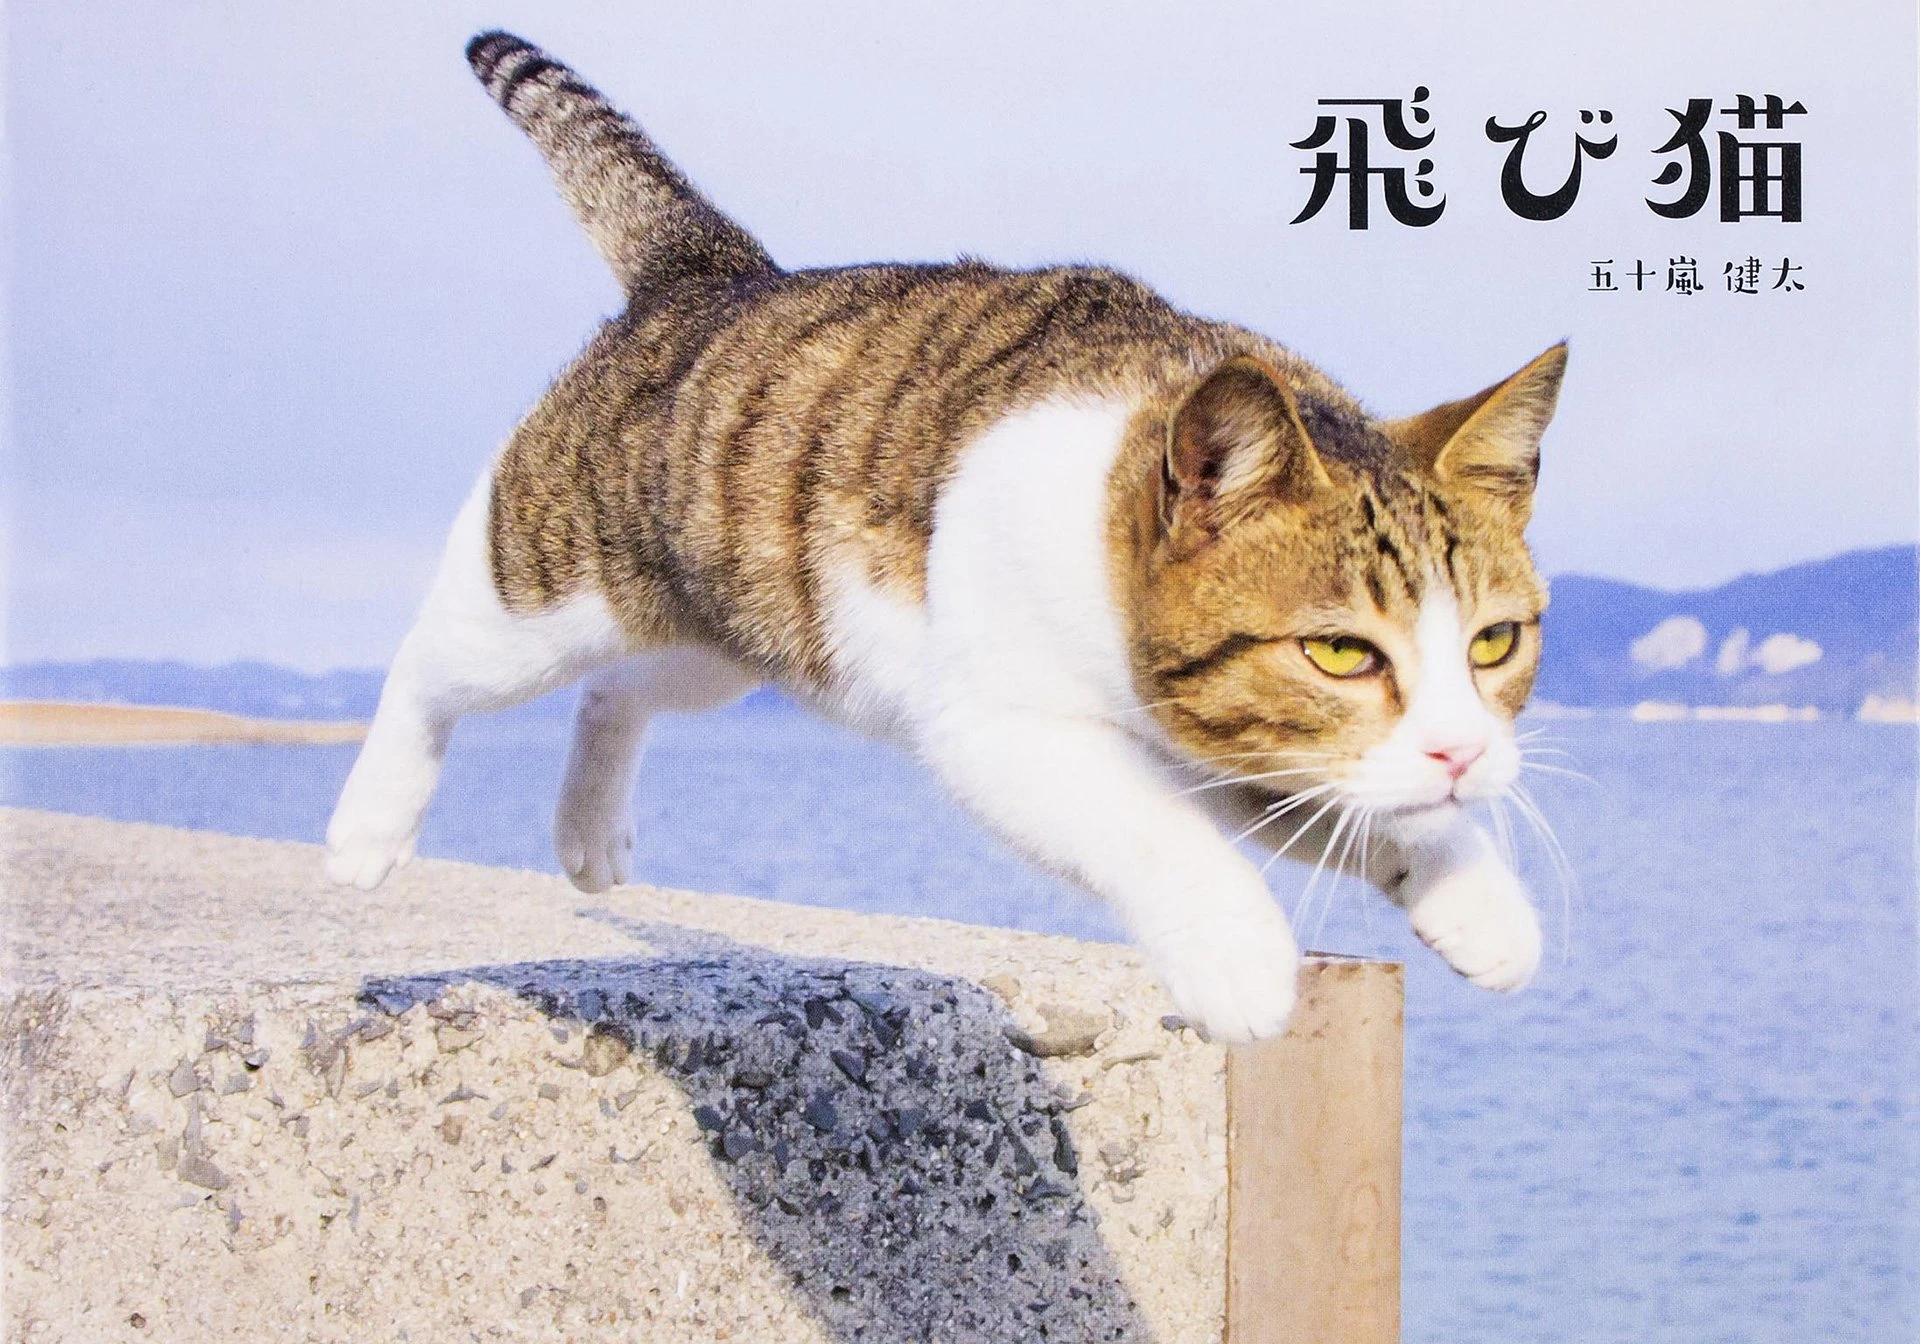 「飛び猫」五十嵐健太の写真展　新作『ねこ禅』の写真も先行公開